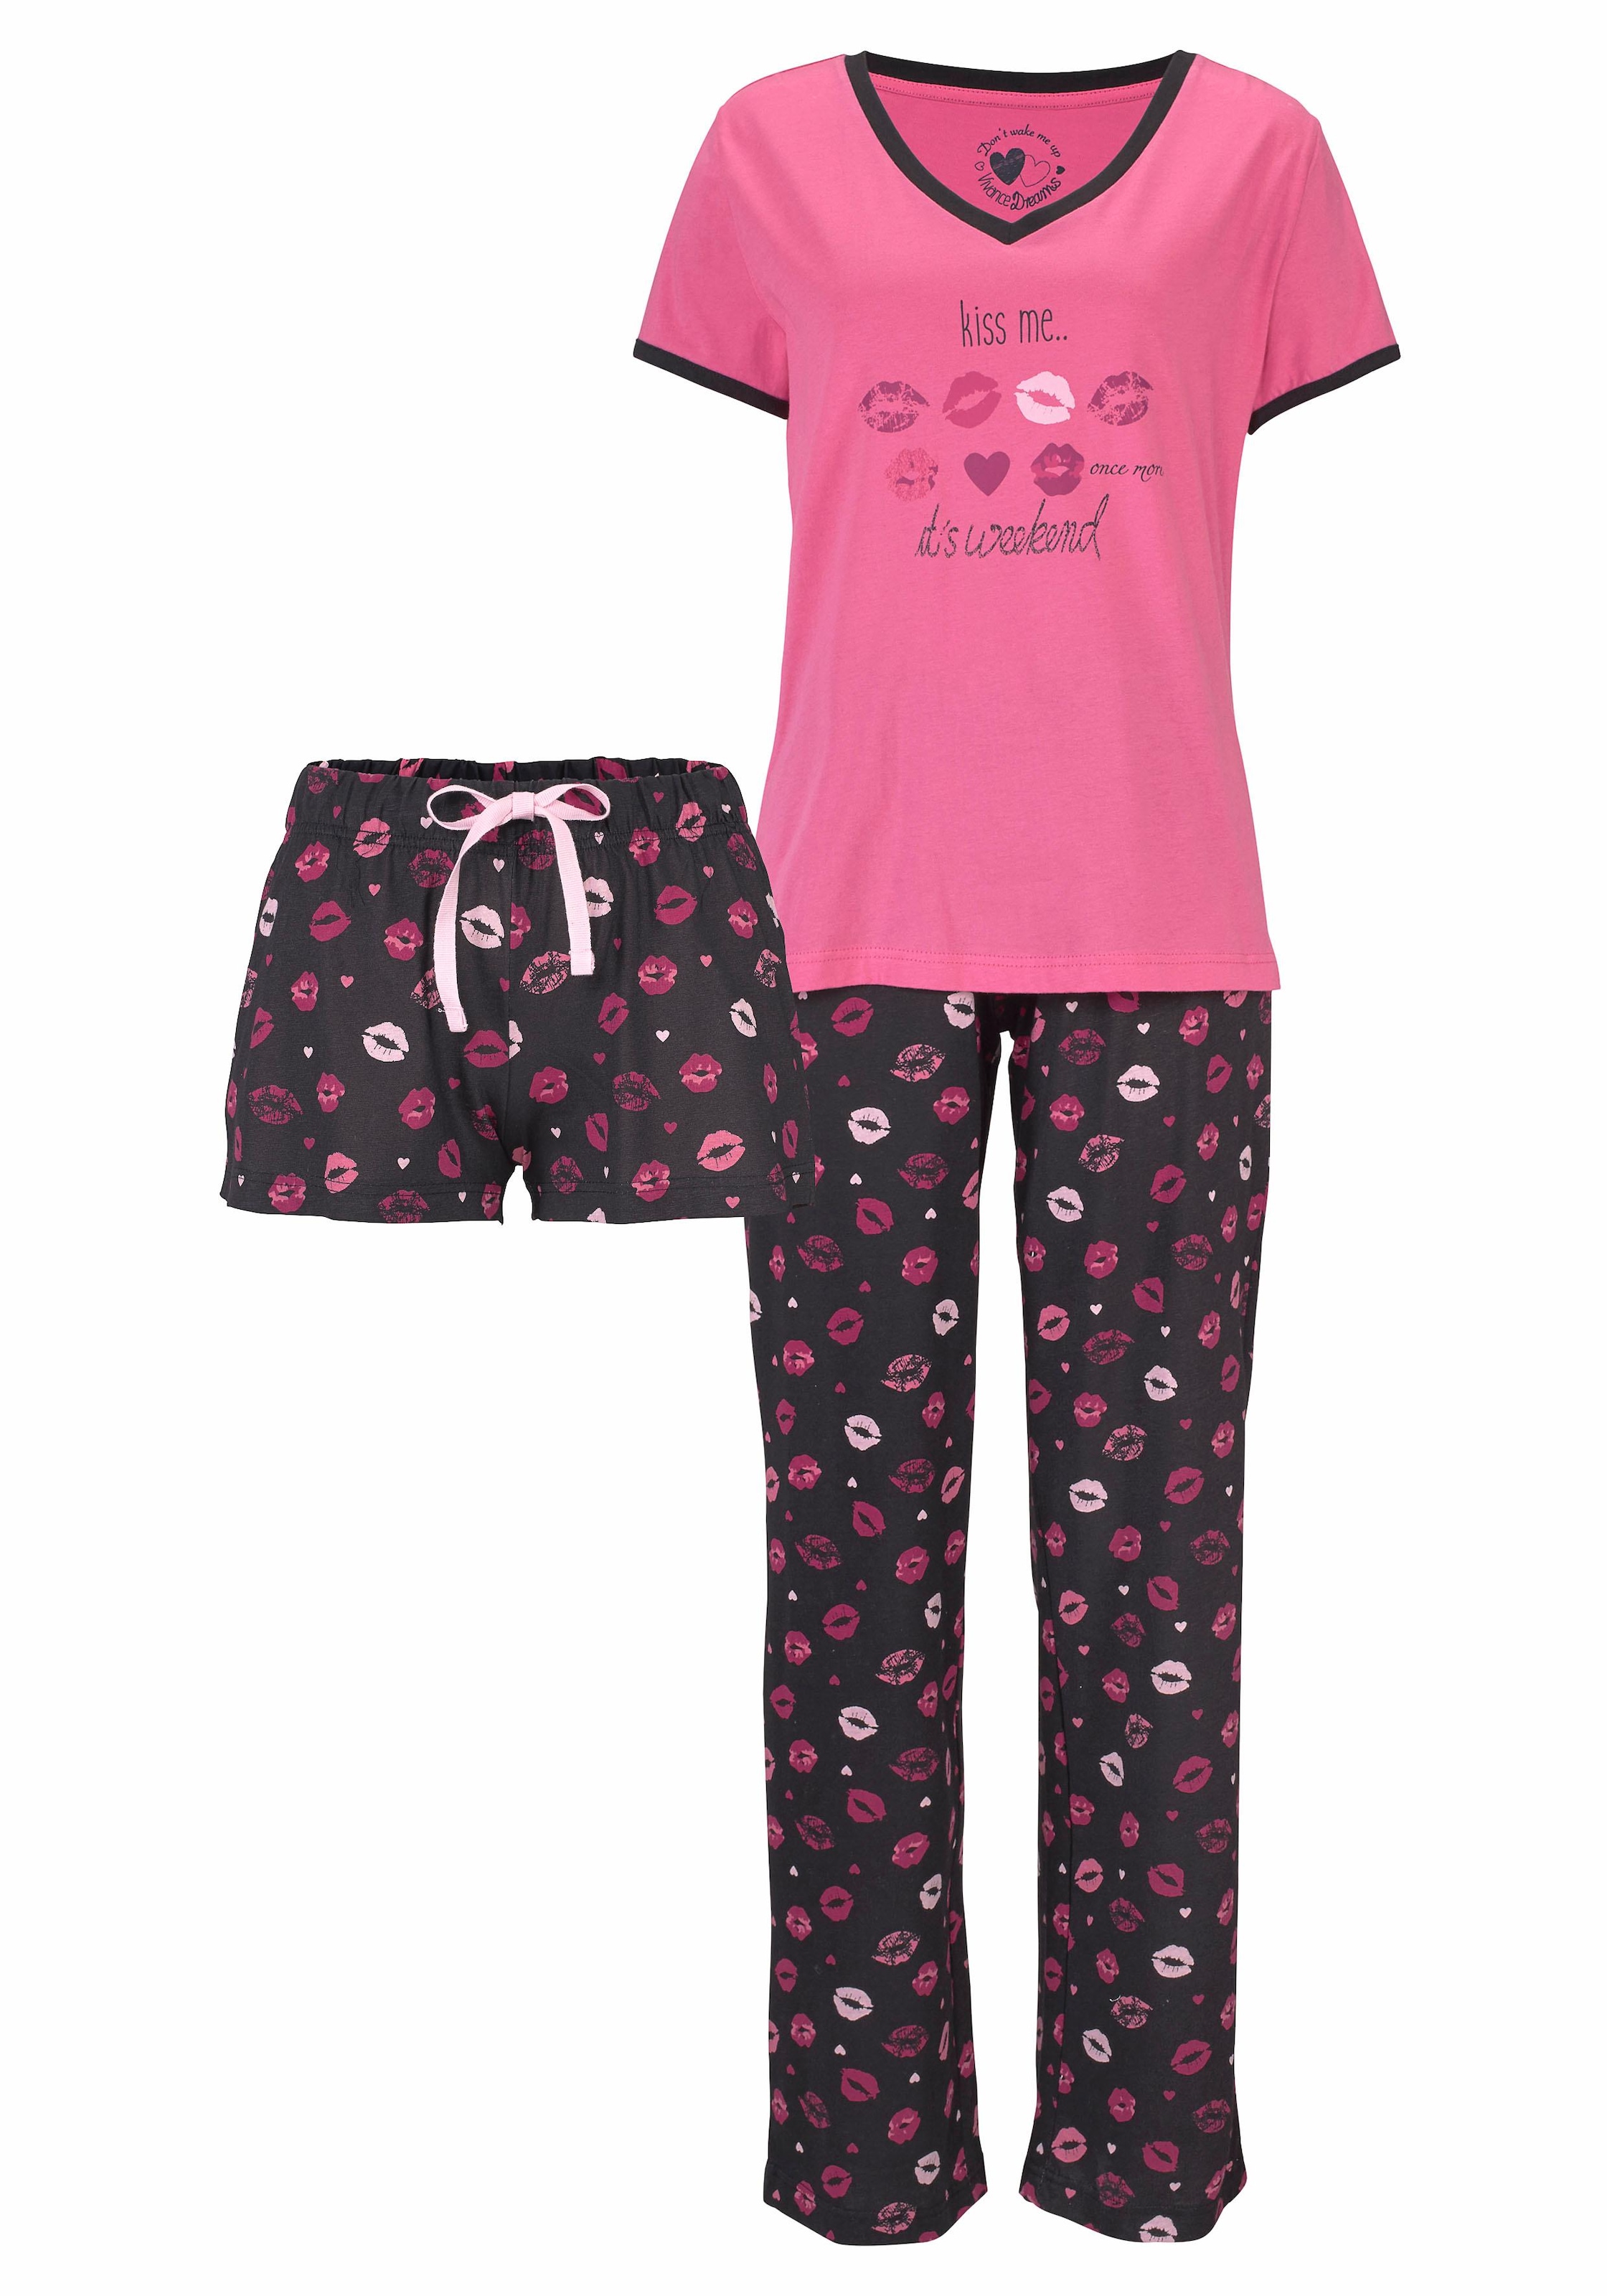 Vivance tlg.), Kussmund & bestellen Rechnung Dreams Pyjama, mit Print Wäsche (3 auf